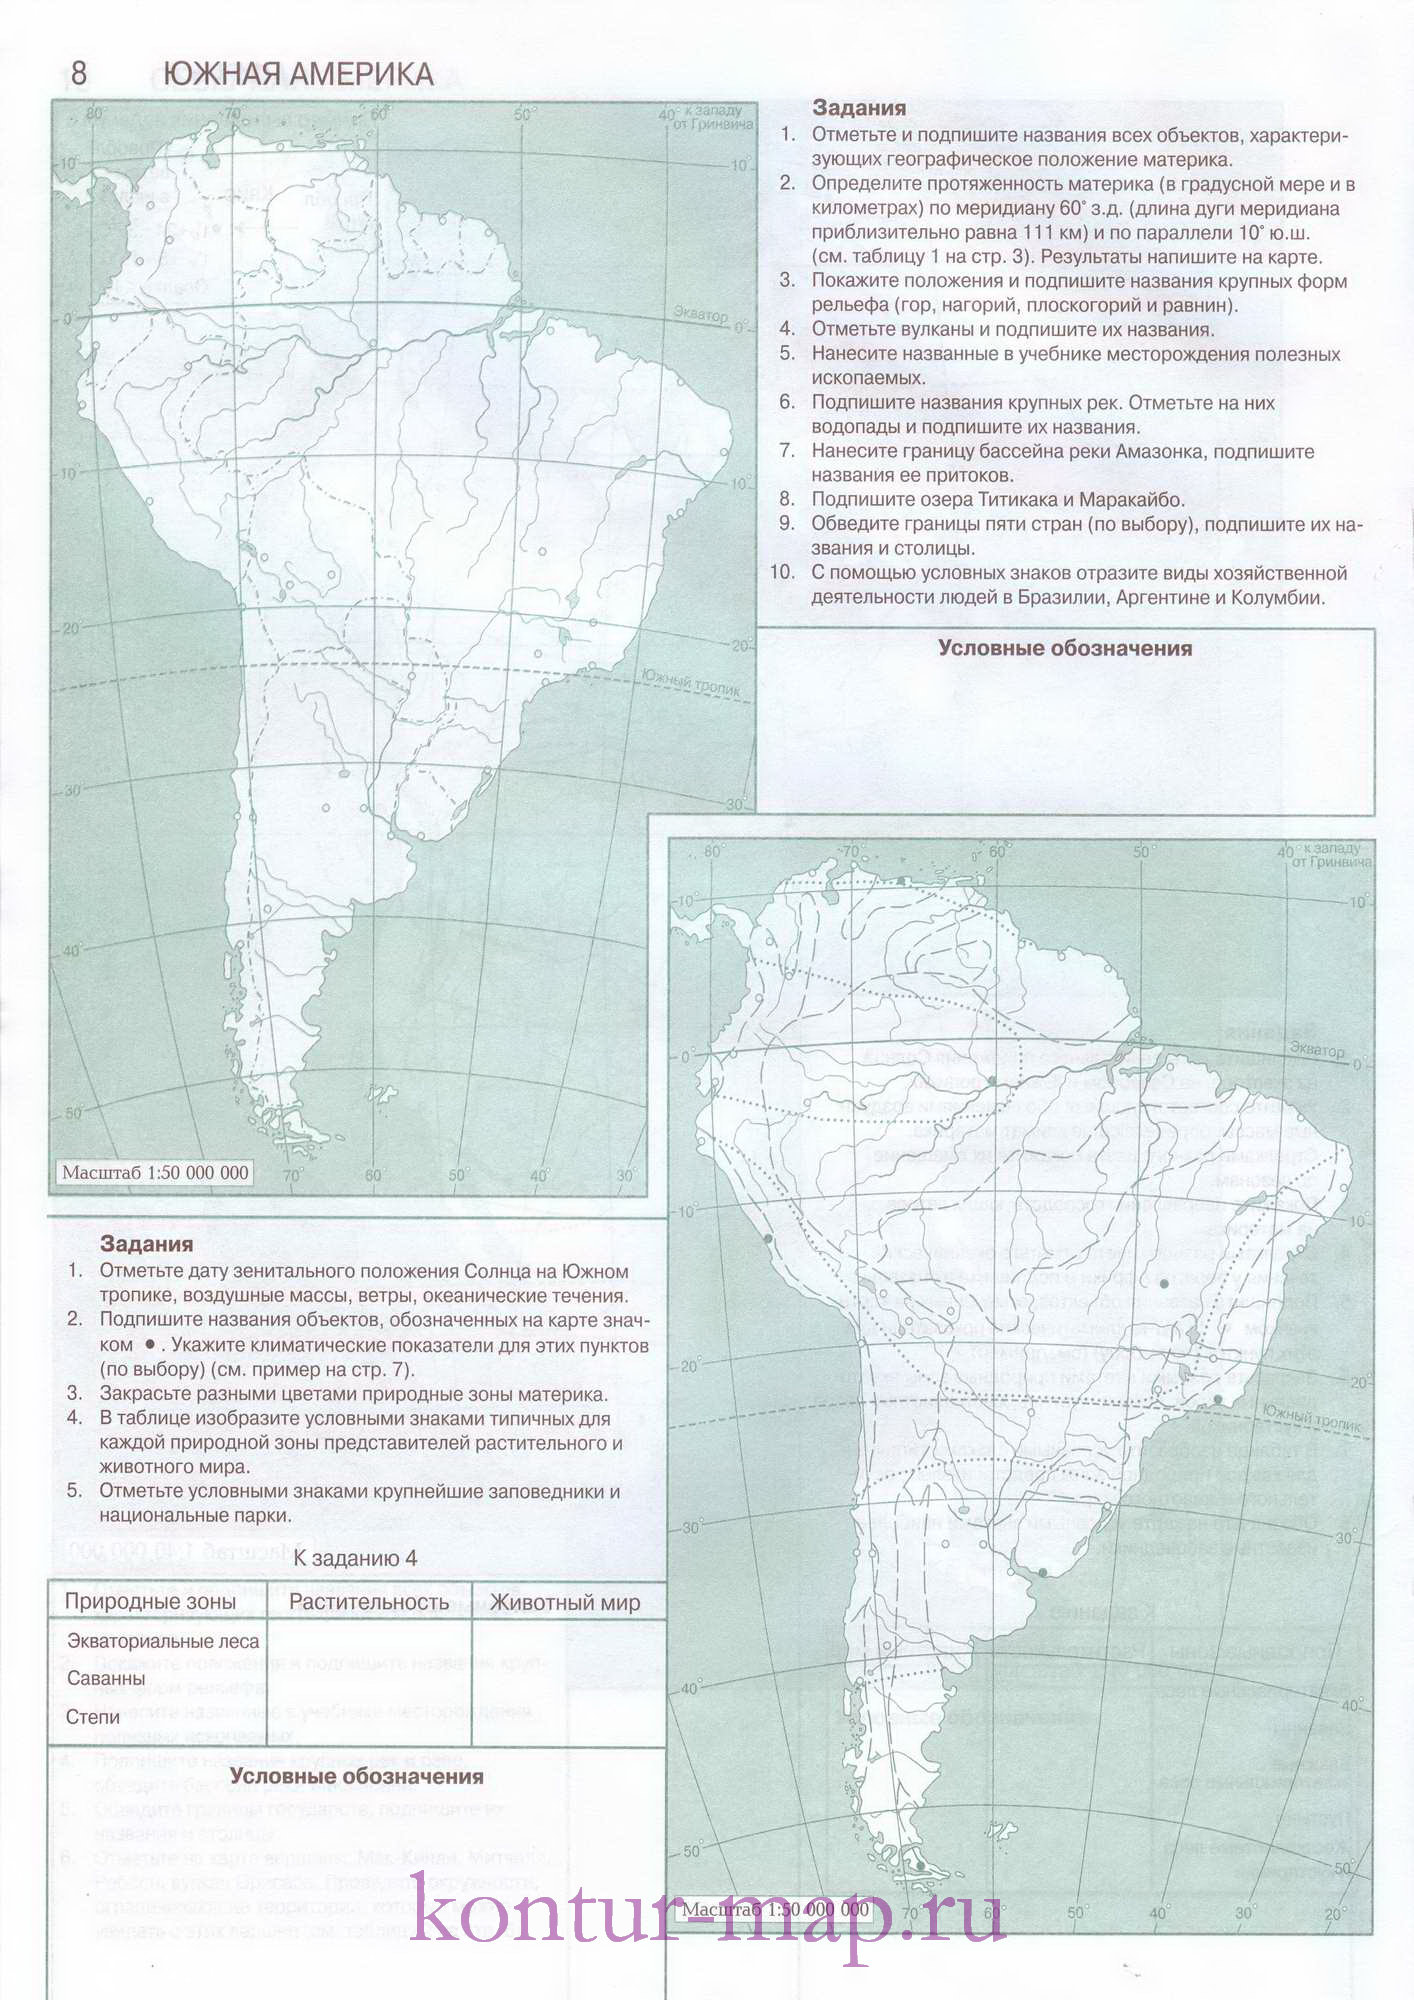 Контурная карта по географии с заданиями - Южная Америка, A0 -